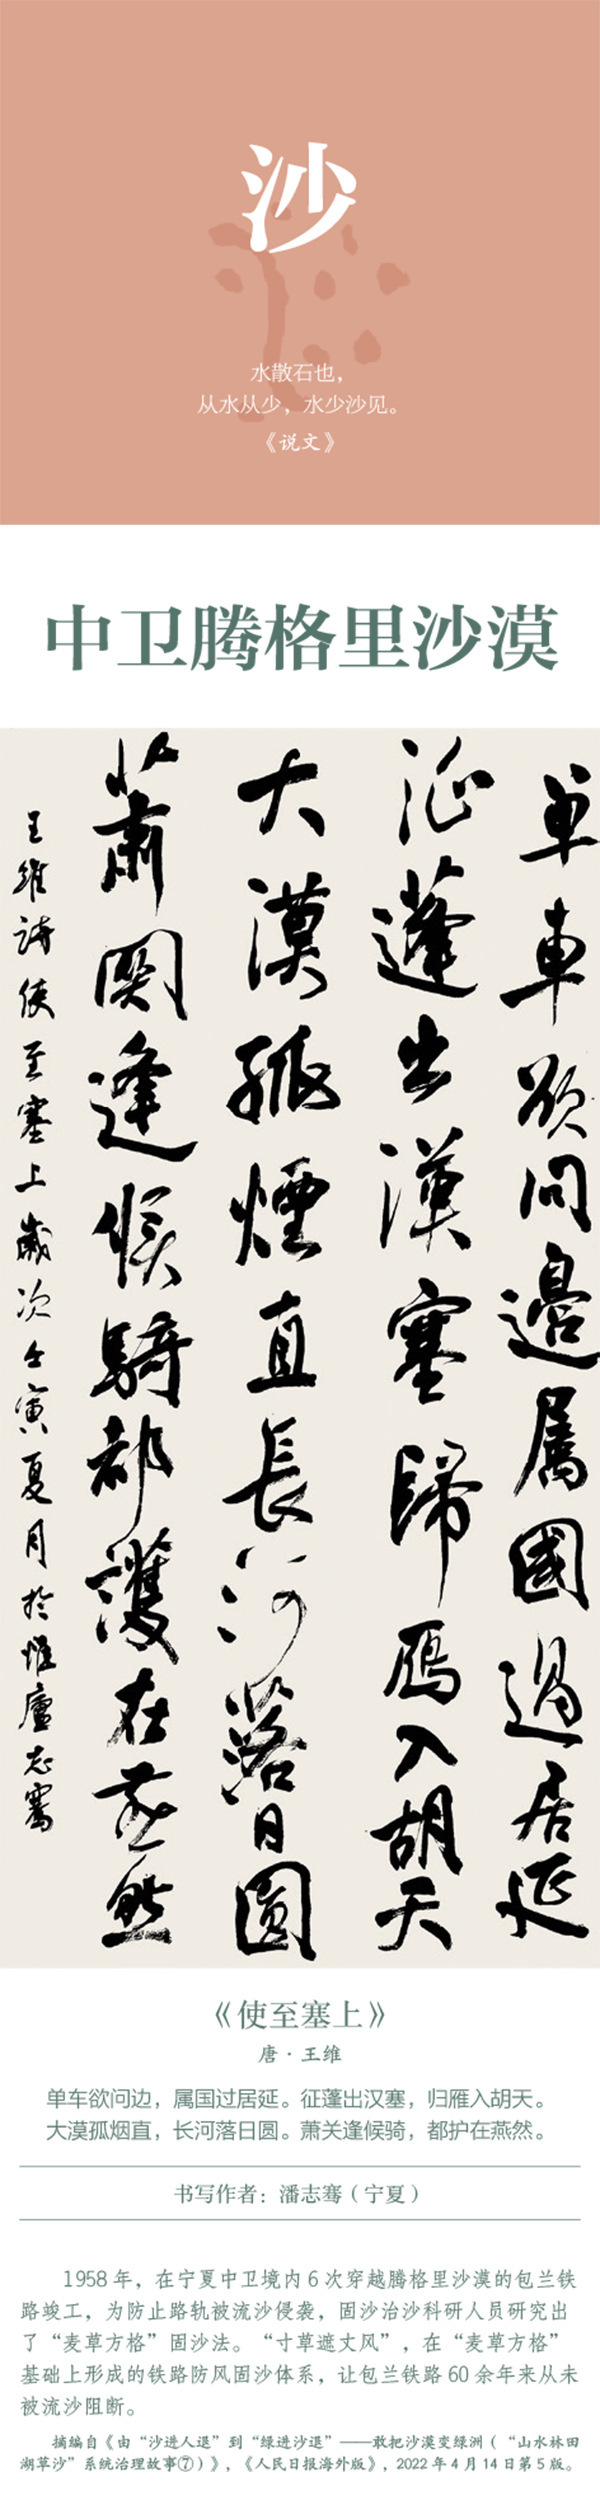 中国书协主题创作书法系列展——美丽中国插图26中国题字网